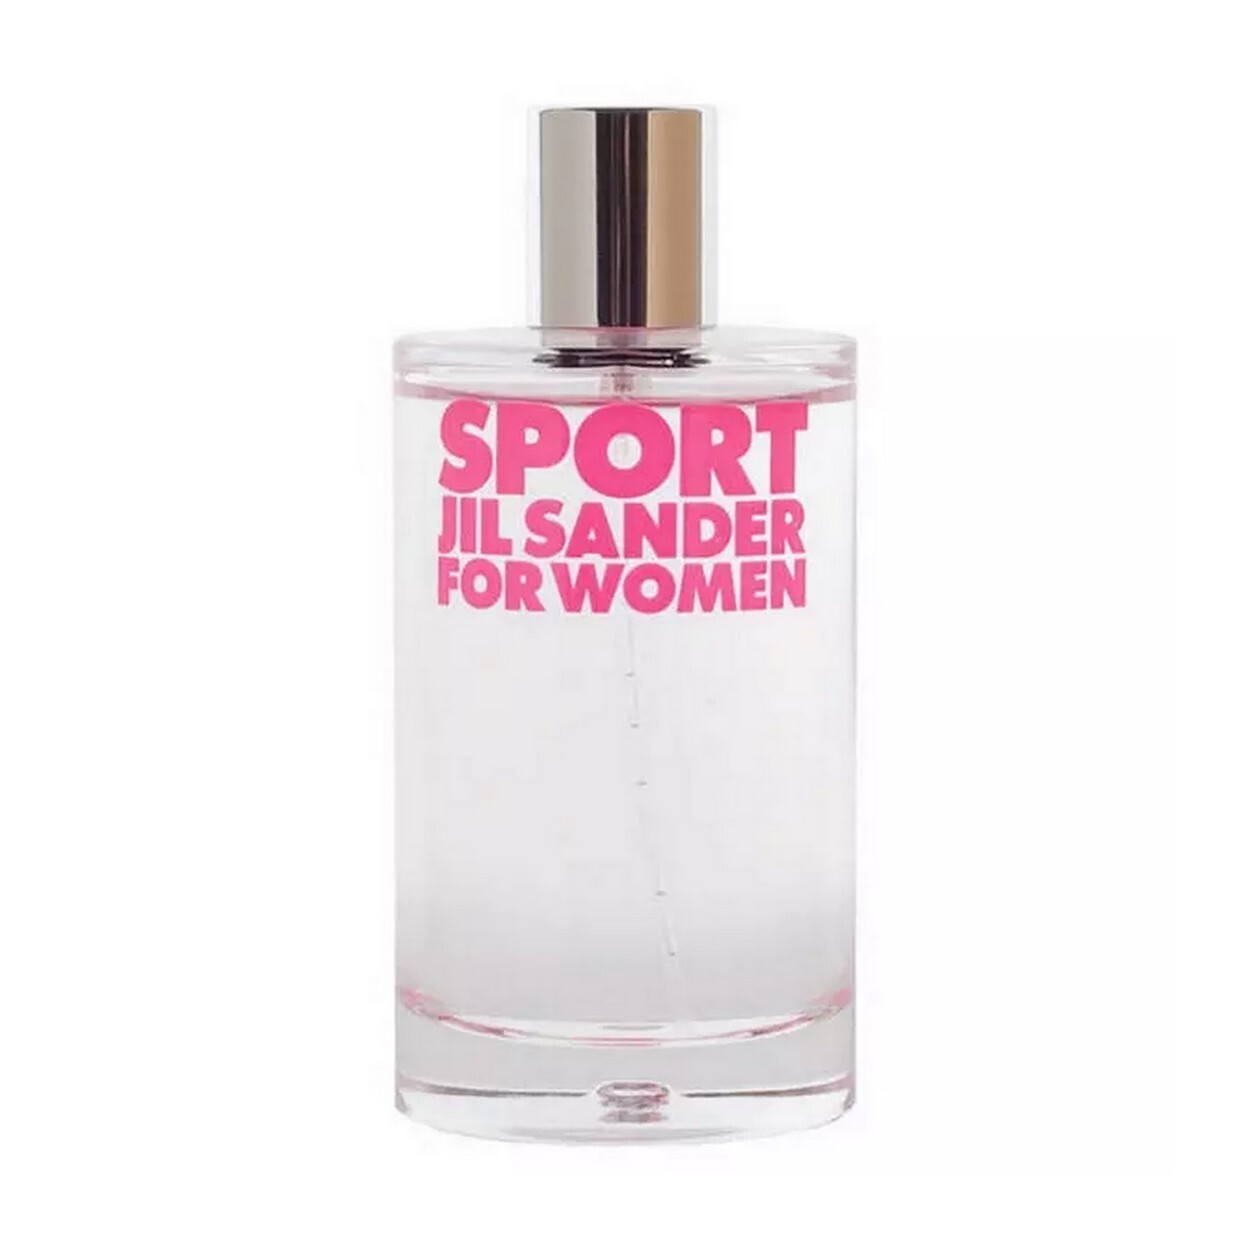 Jil Sander - Sport for Women - 100 ml - Edt thumbnail